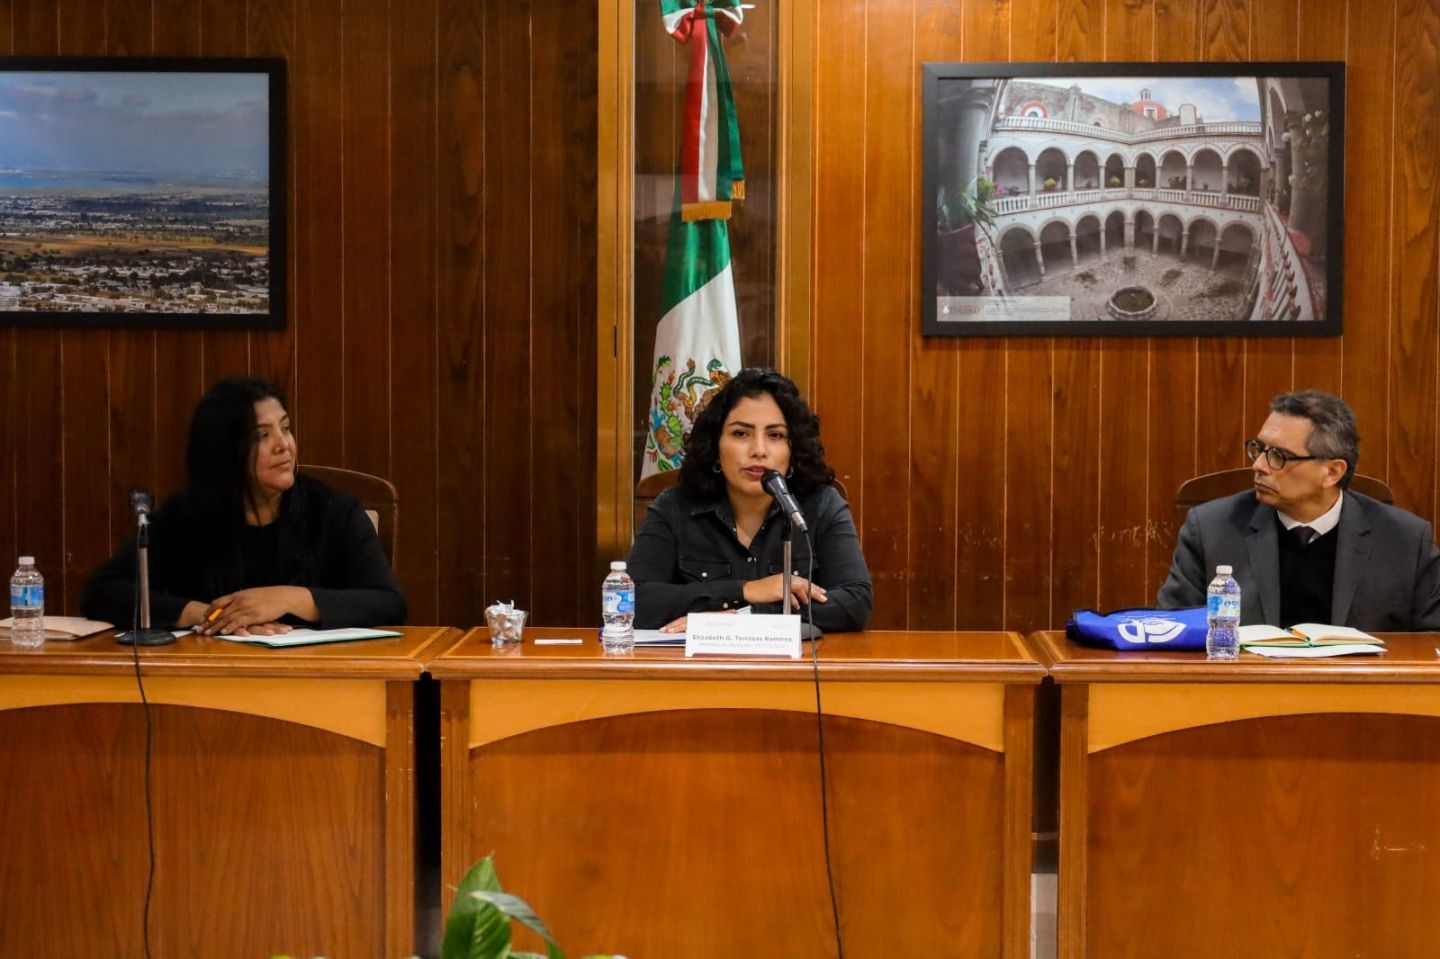 Ayuntamiento de Texcoco y Colegio de Postgraduados
Evalúan y Programan Actividades Conjuntas
